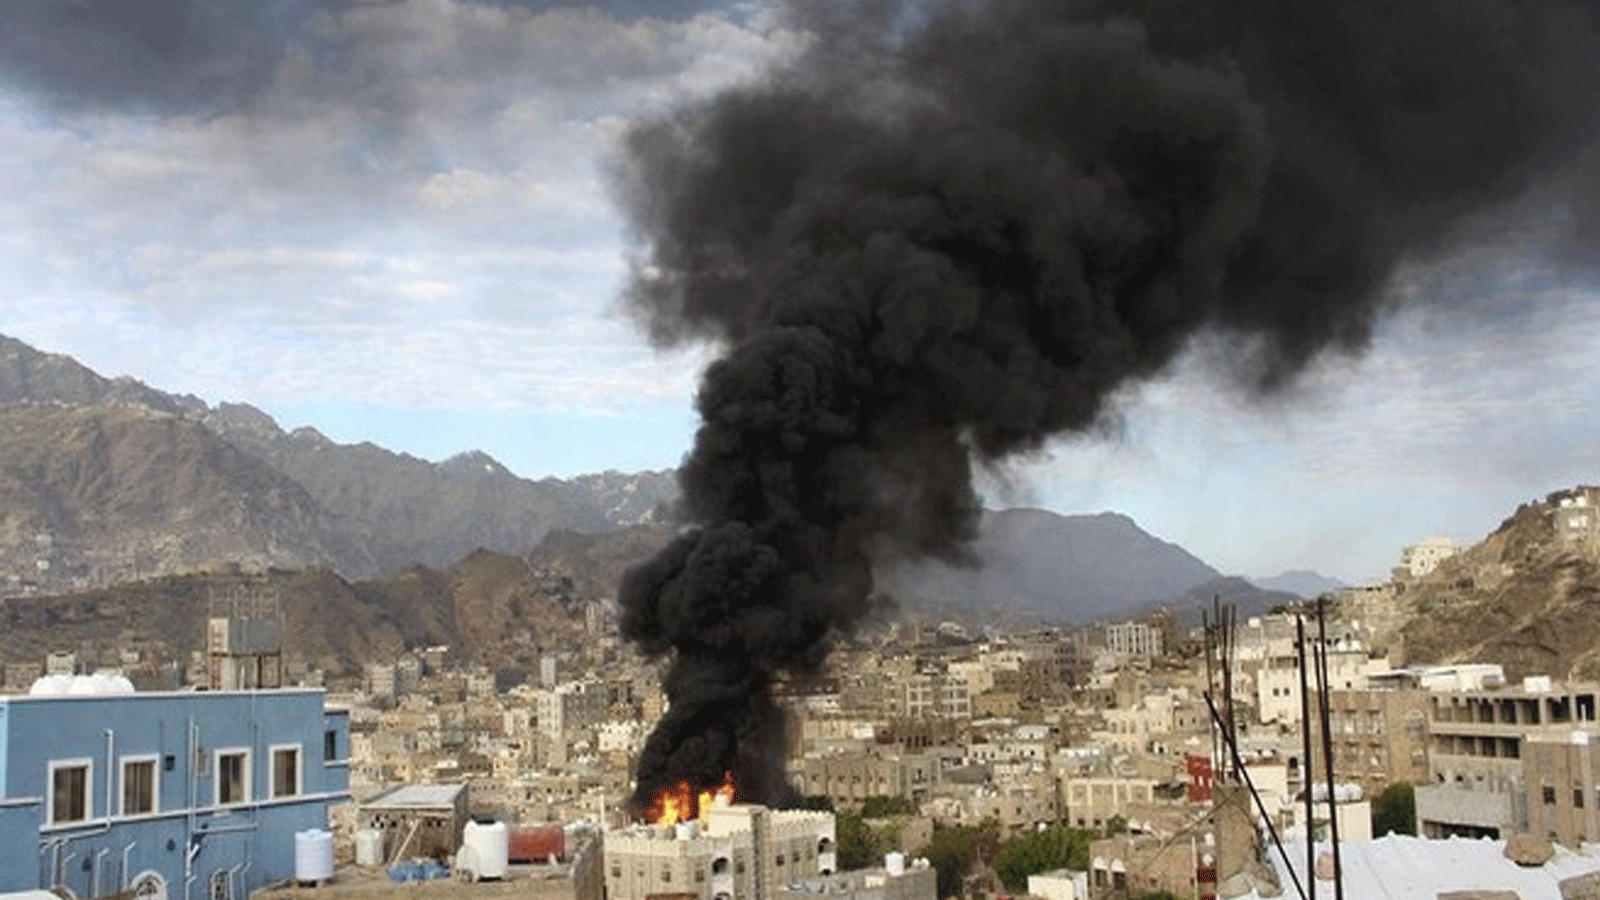 مقاتلو مليشيا الحوثي يعرّضون حياة المدنيين للخطر من خلال تخزين أسلحة وذخائر في مبان سكنية.